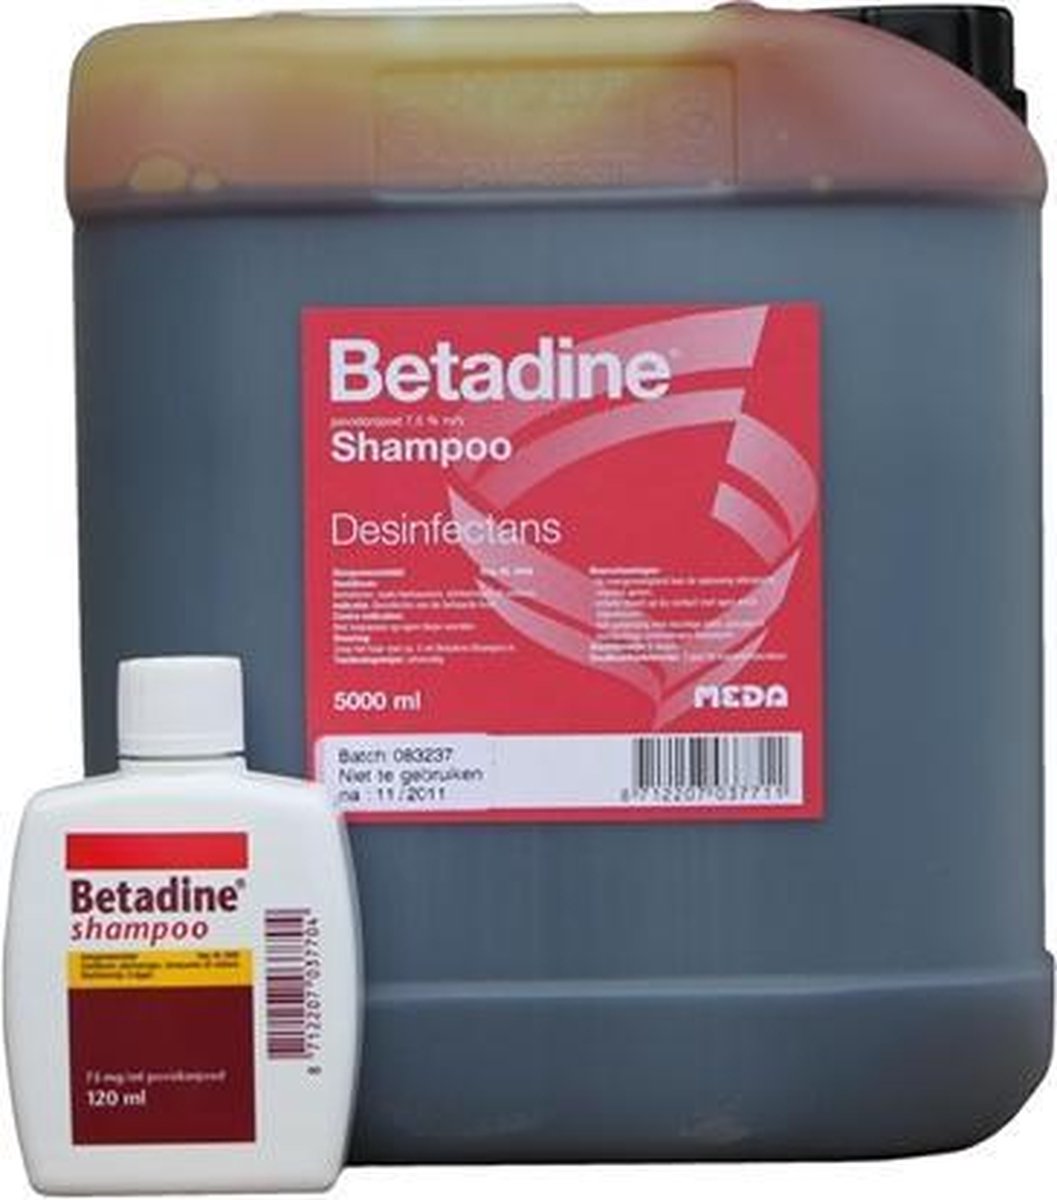 Betadine shampoo REG NL 3448 | bol